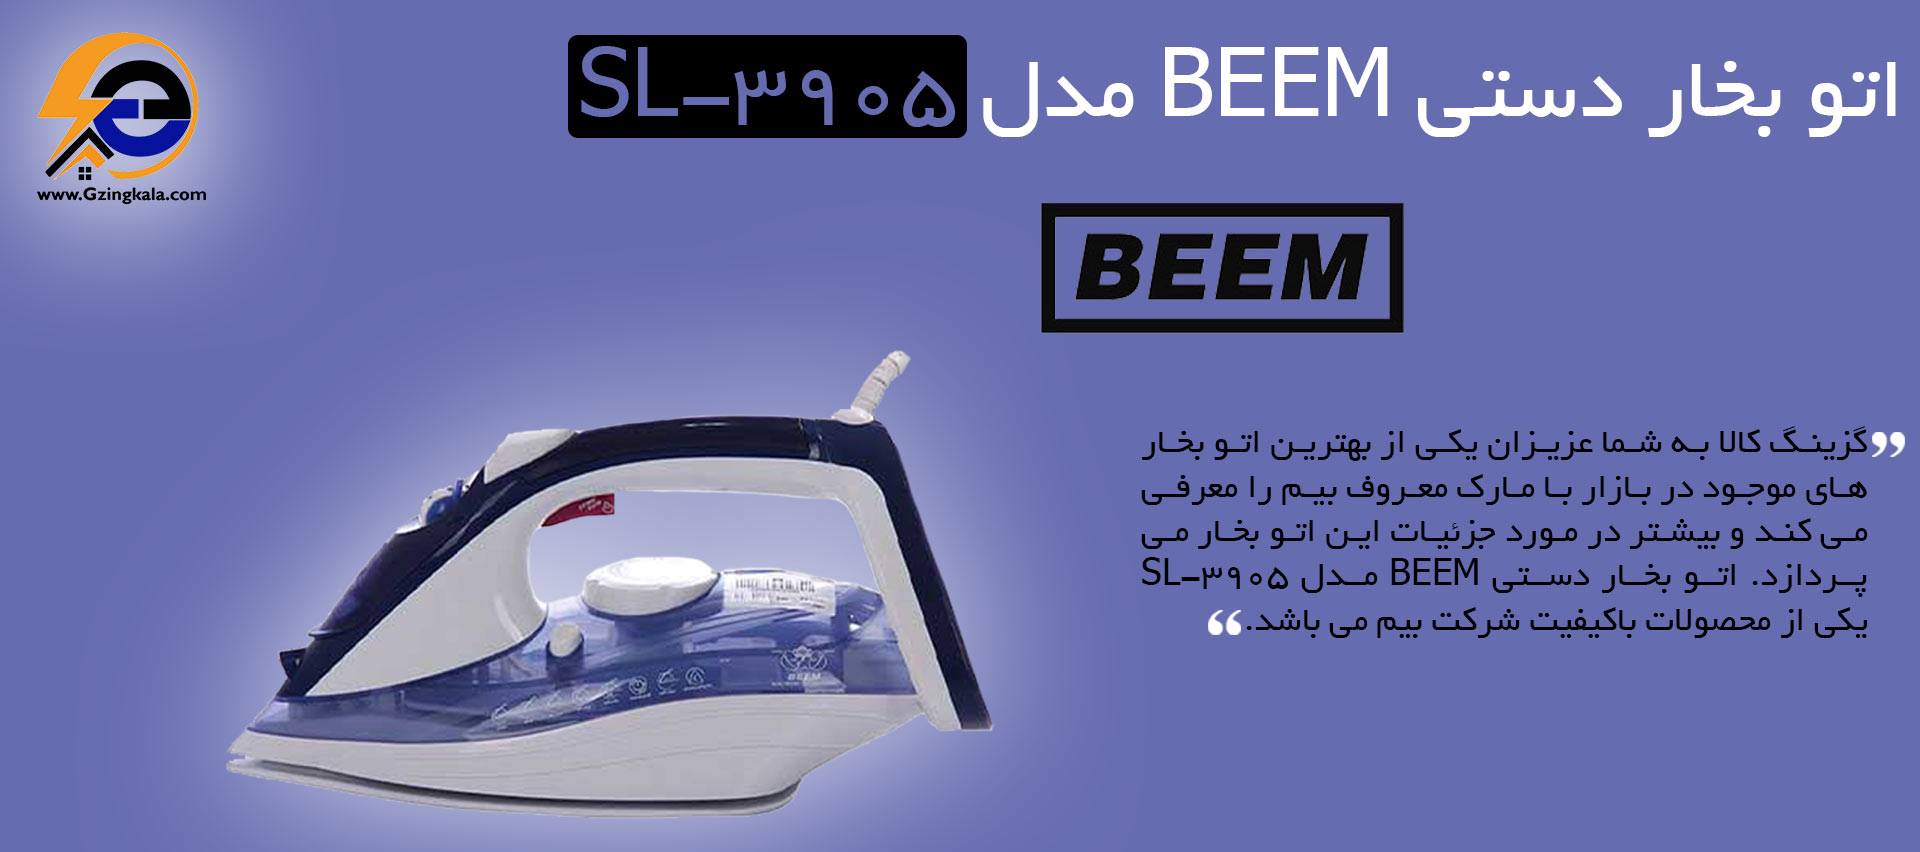 اتو بخار دستی BEEM مدل Sl-3905